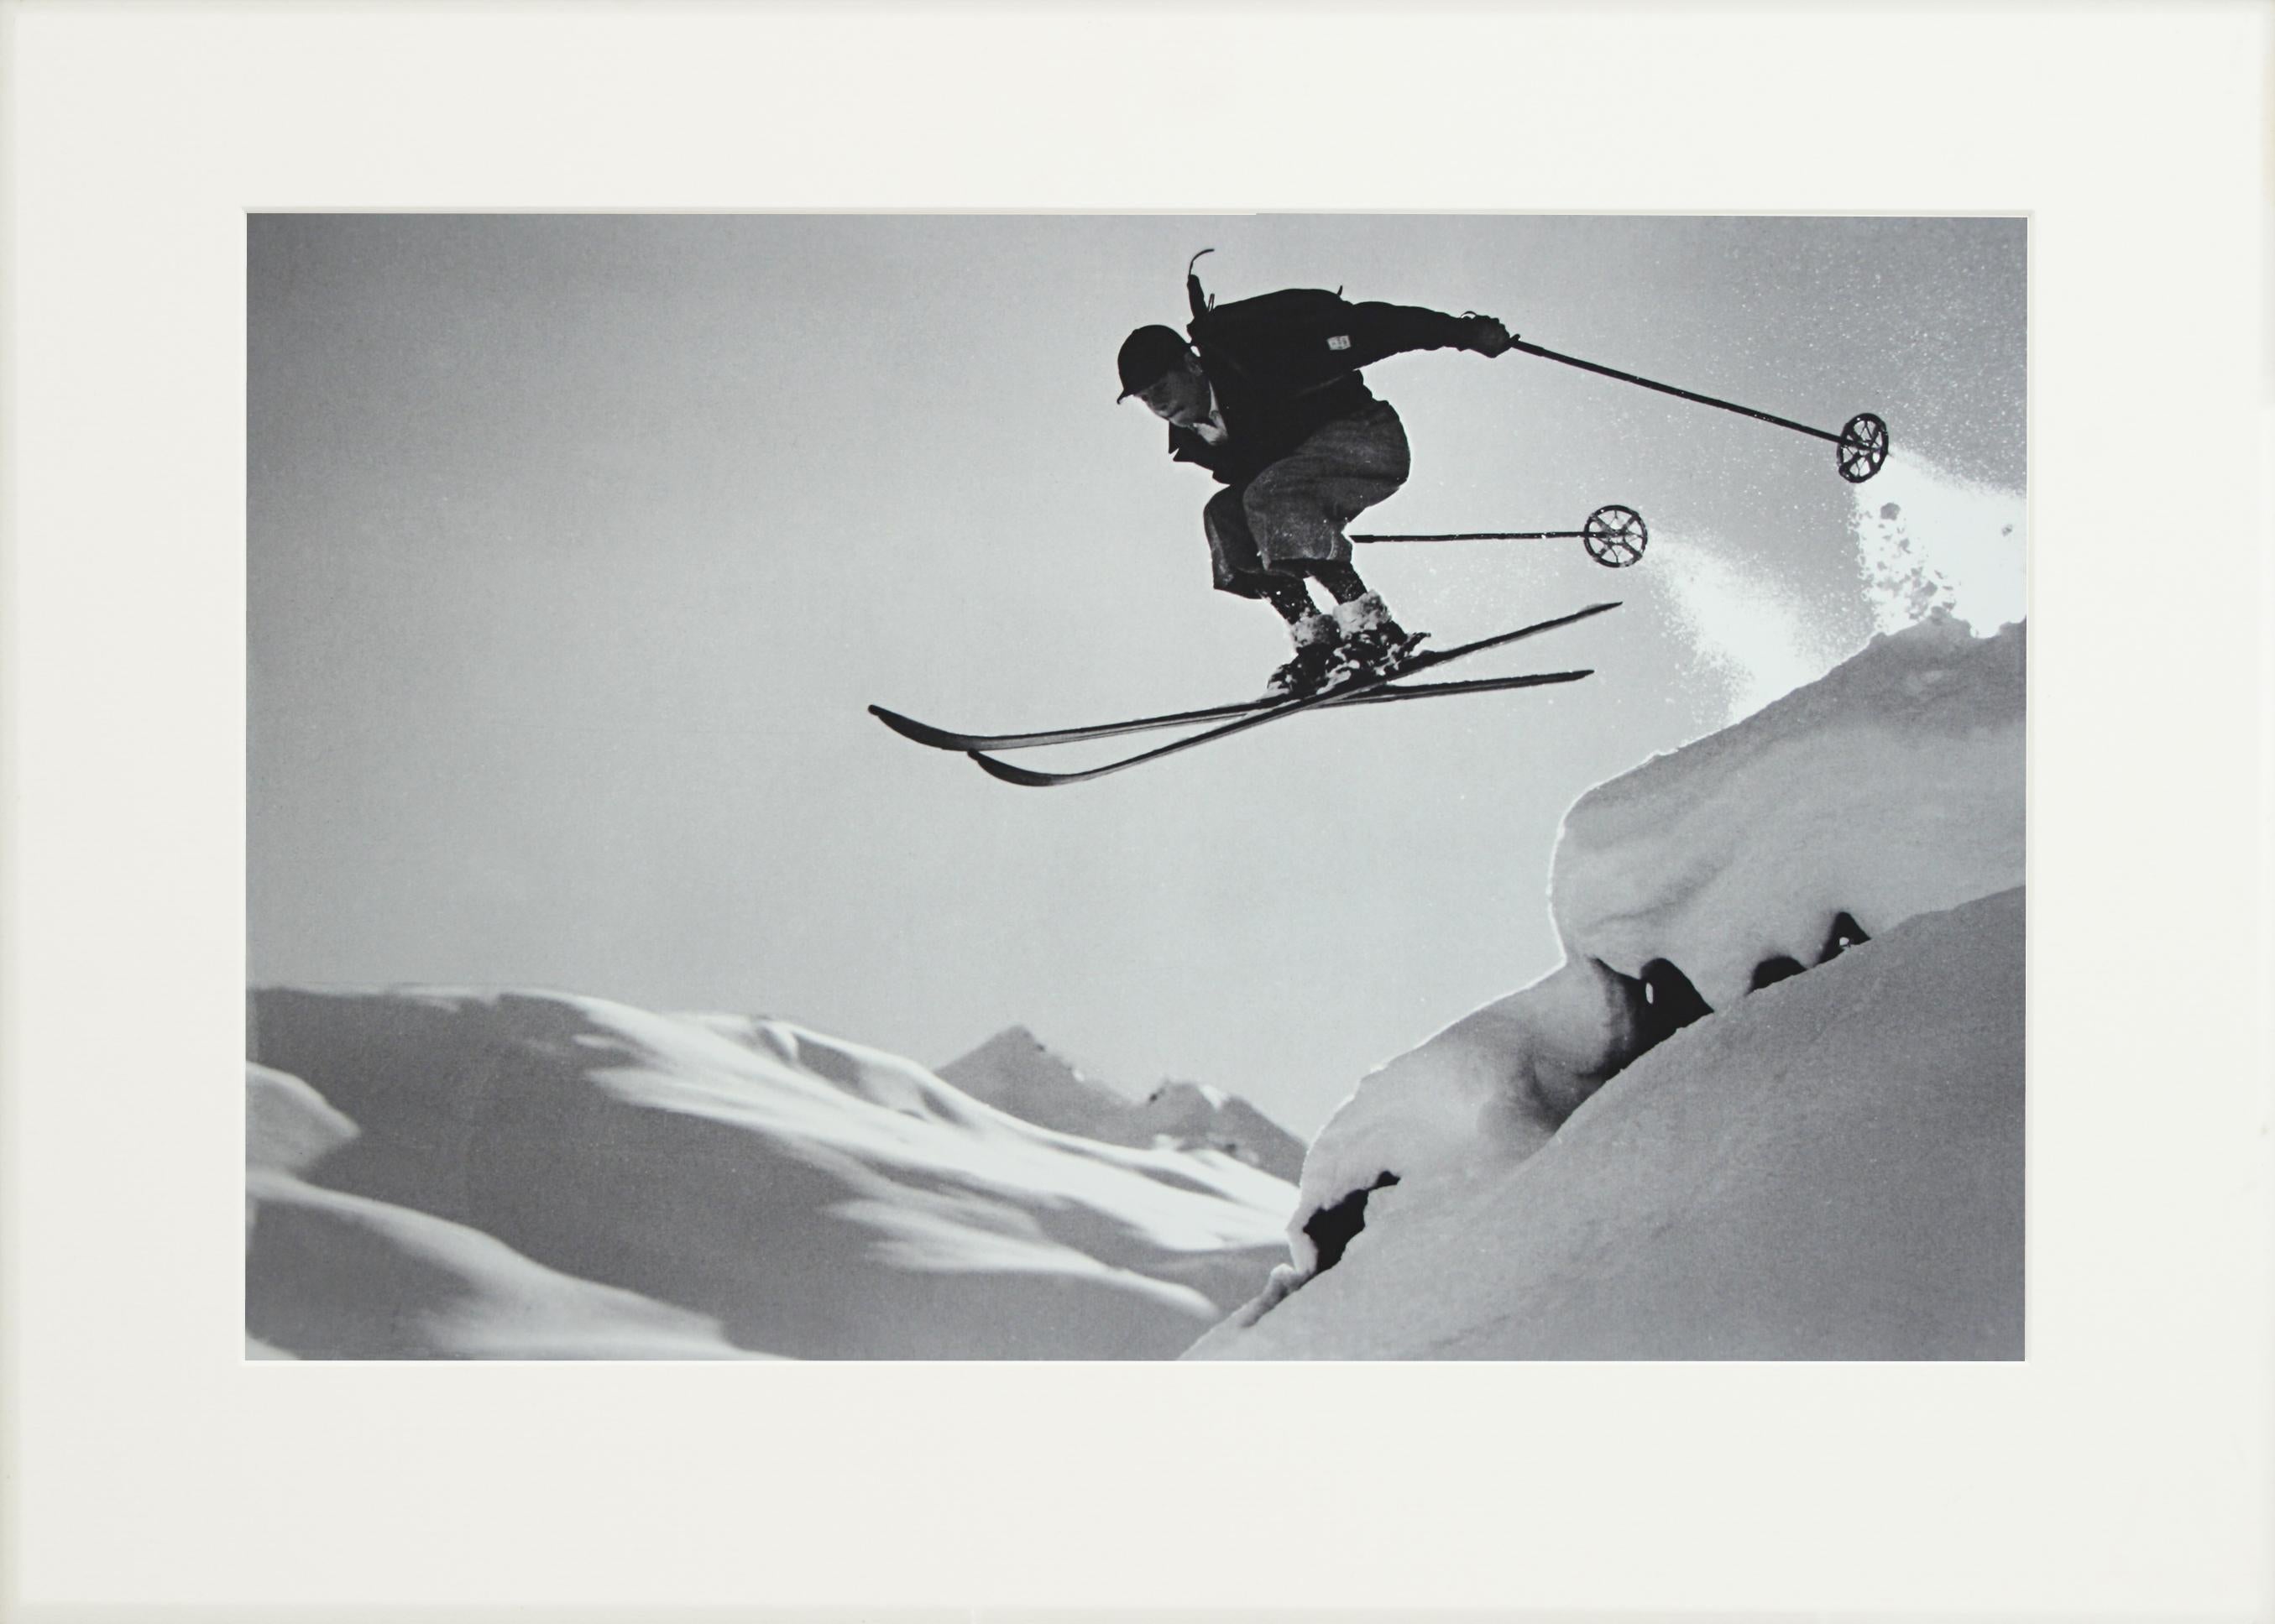 Fotografía de esquí de época, Fotografía antigua de esquí alpino, 'Un salto valiente' Arte deportivo en venta